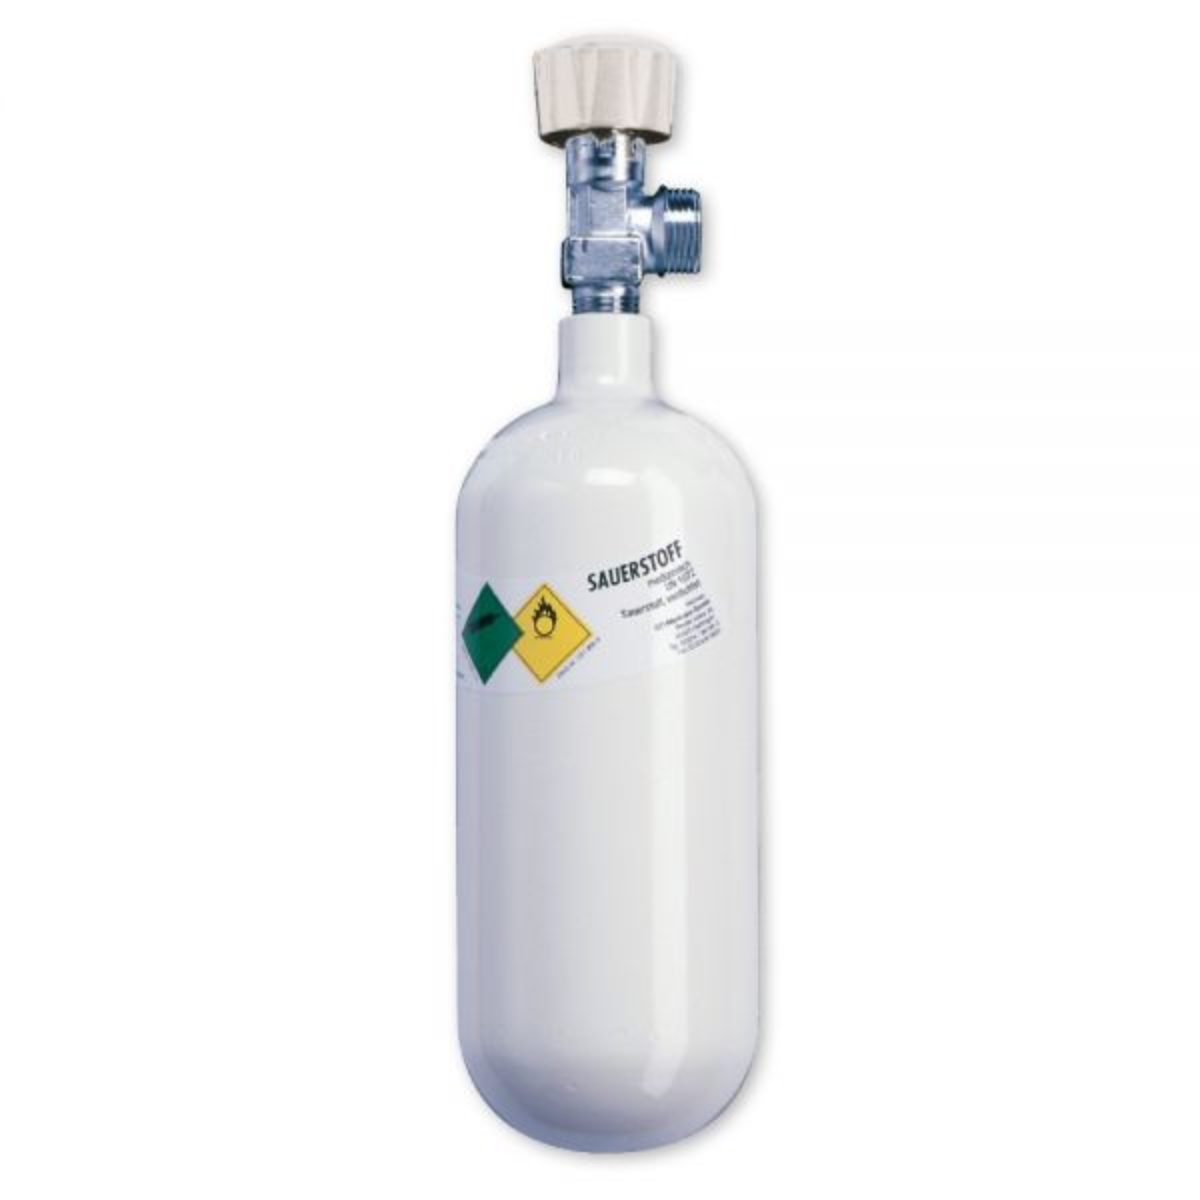 1,8-Liter Sauerstoffflasche - Flasche aus Aluminium mit medizinischem  Sauerstoff Druck: 200 bar von Team Impuls